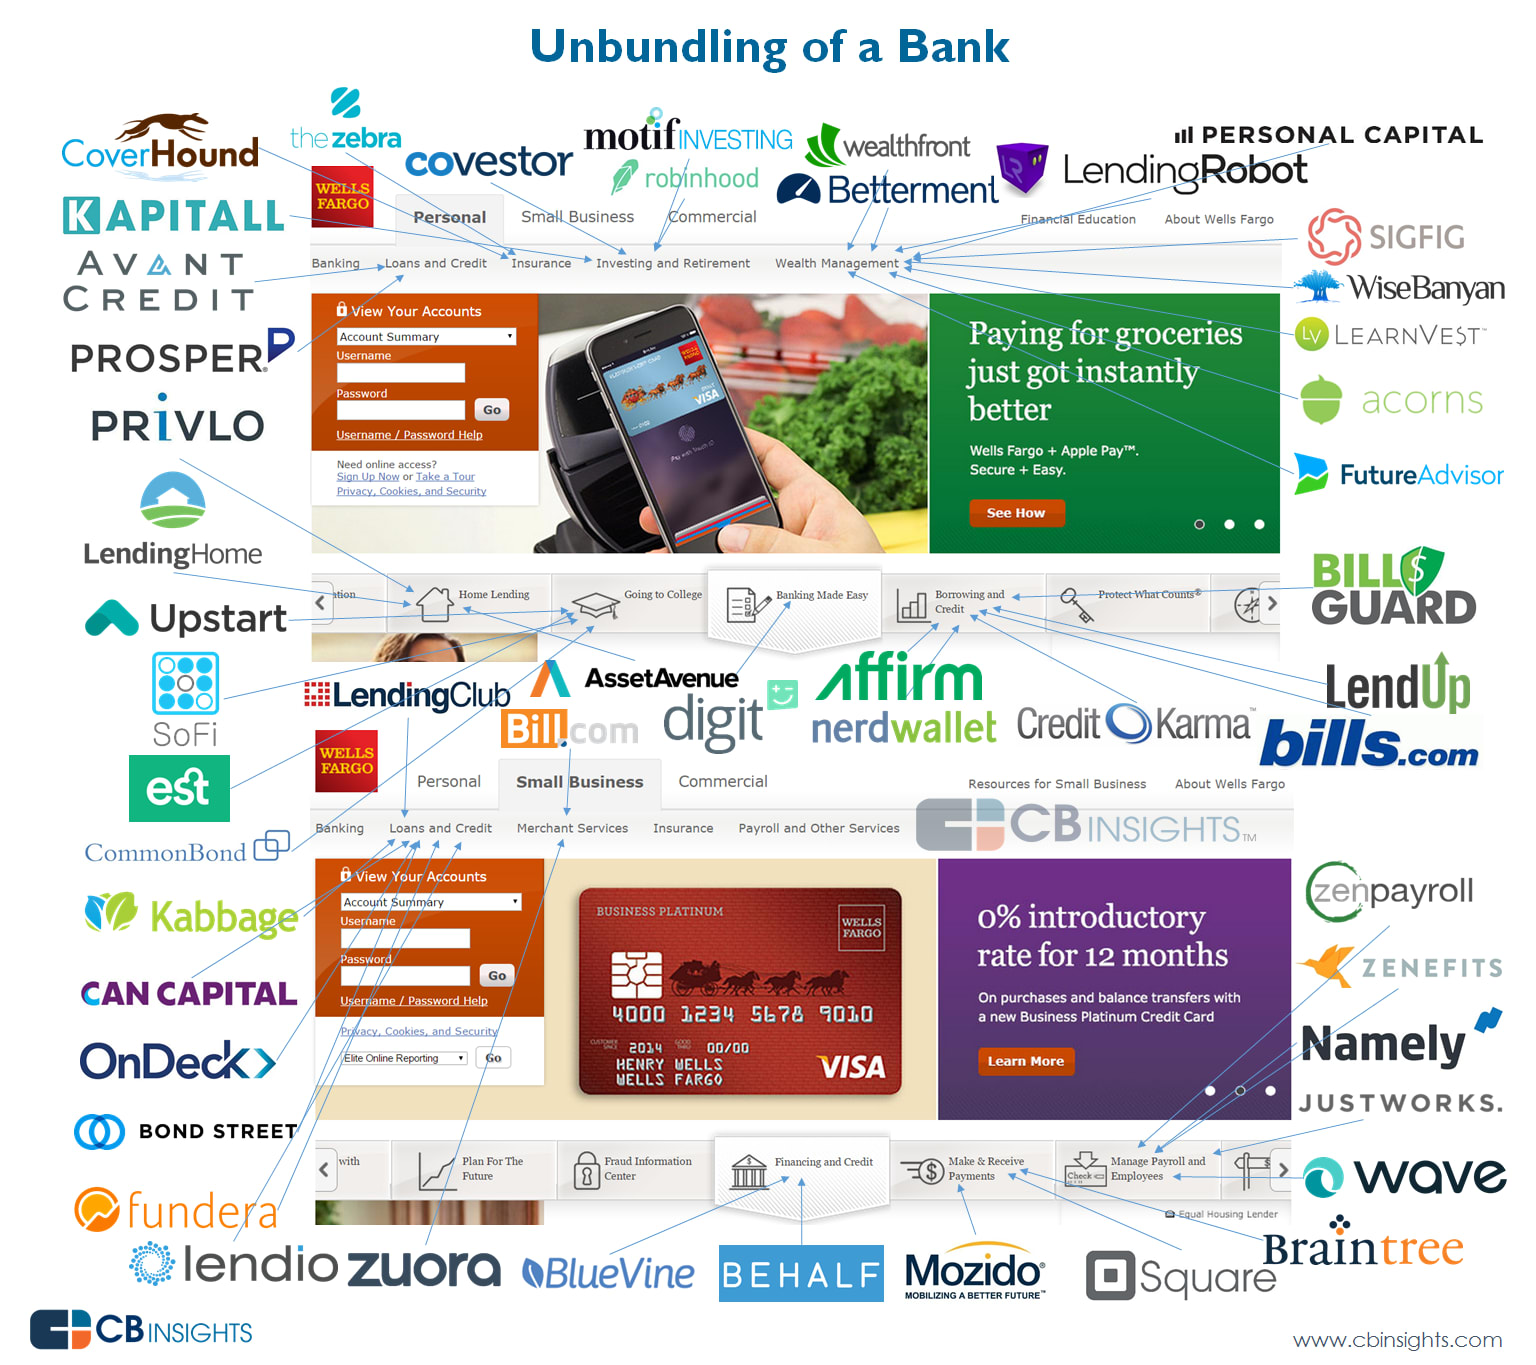 Unbundling of banks